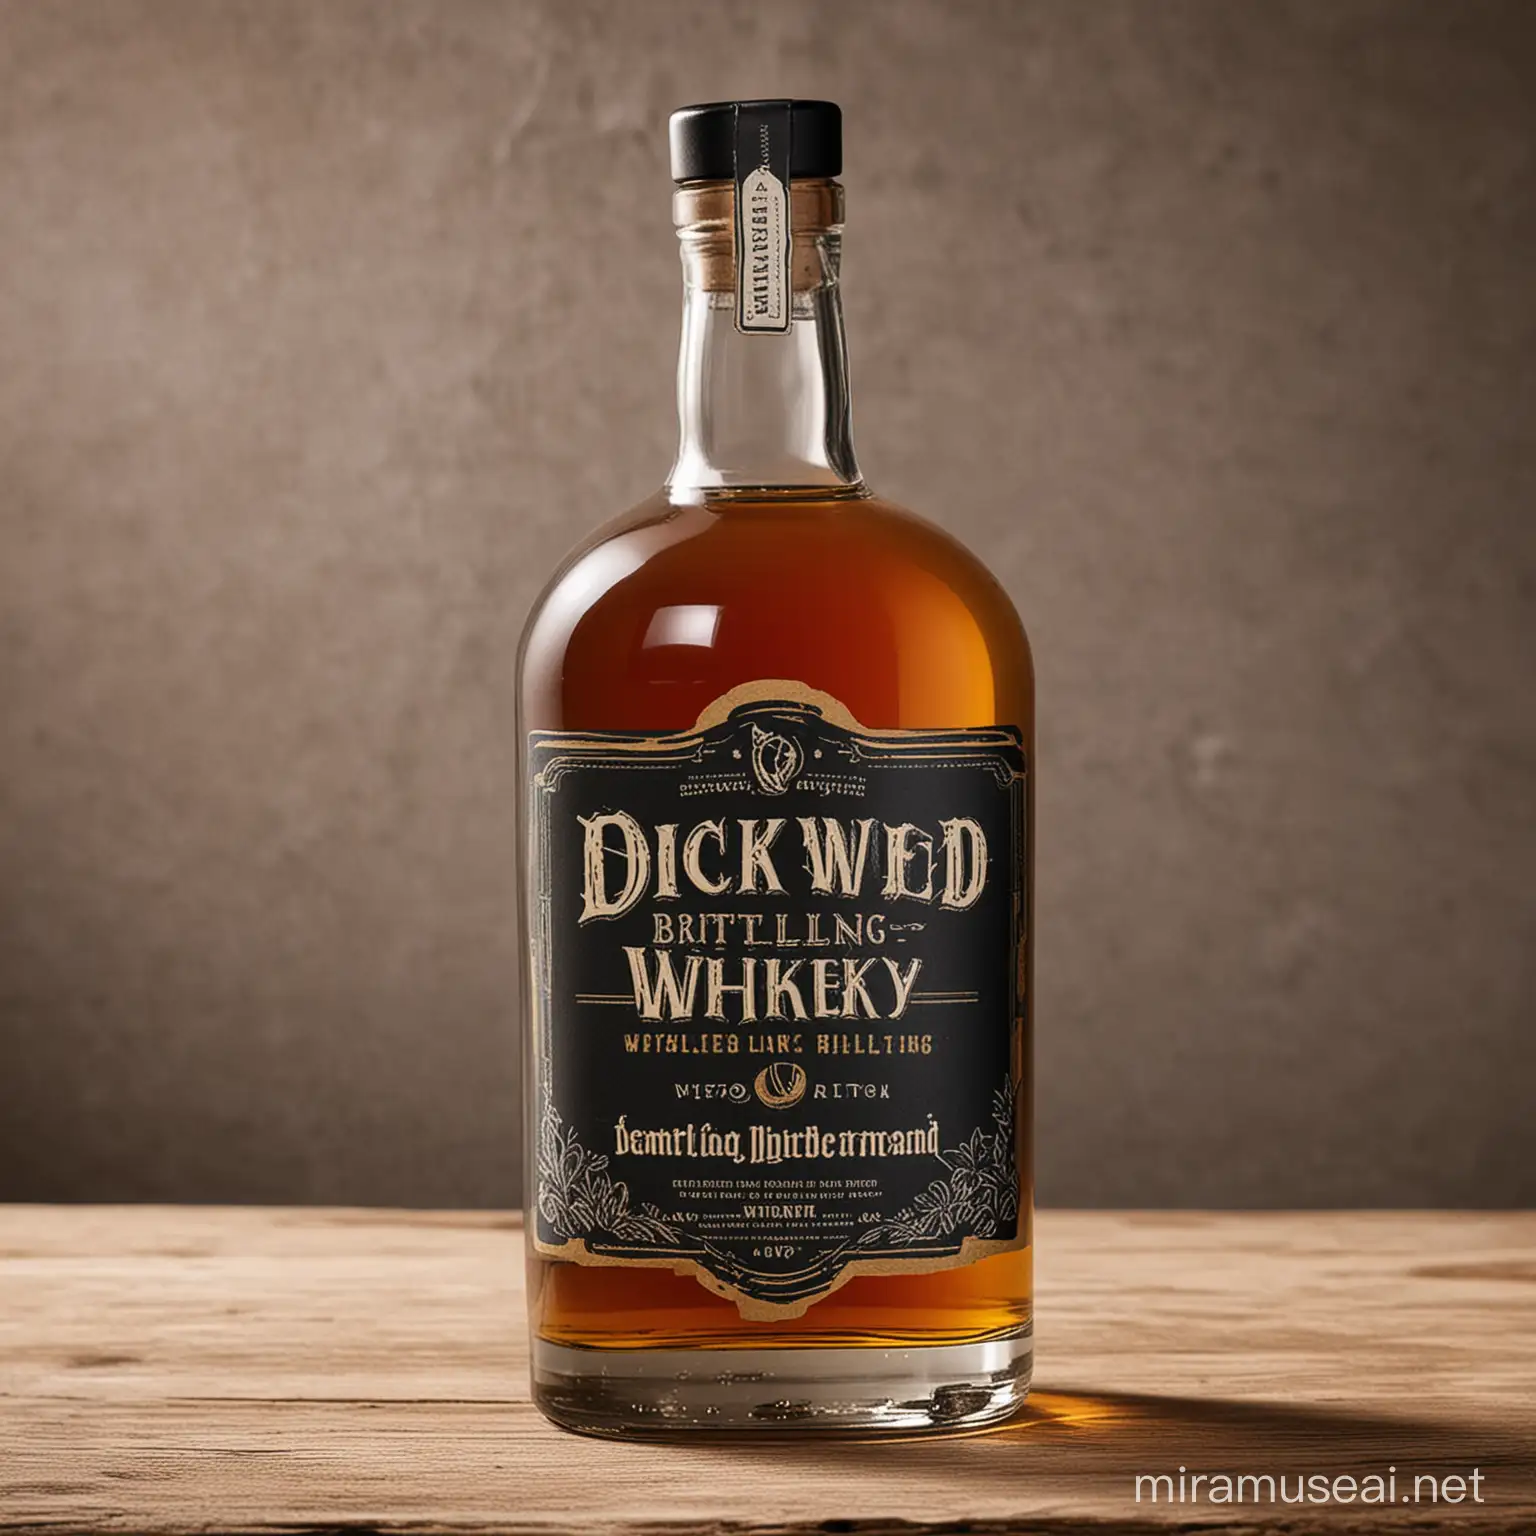 Blackwater Distilling Dick Weed Whiskey Bottle Packaging Design